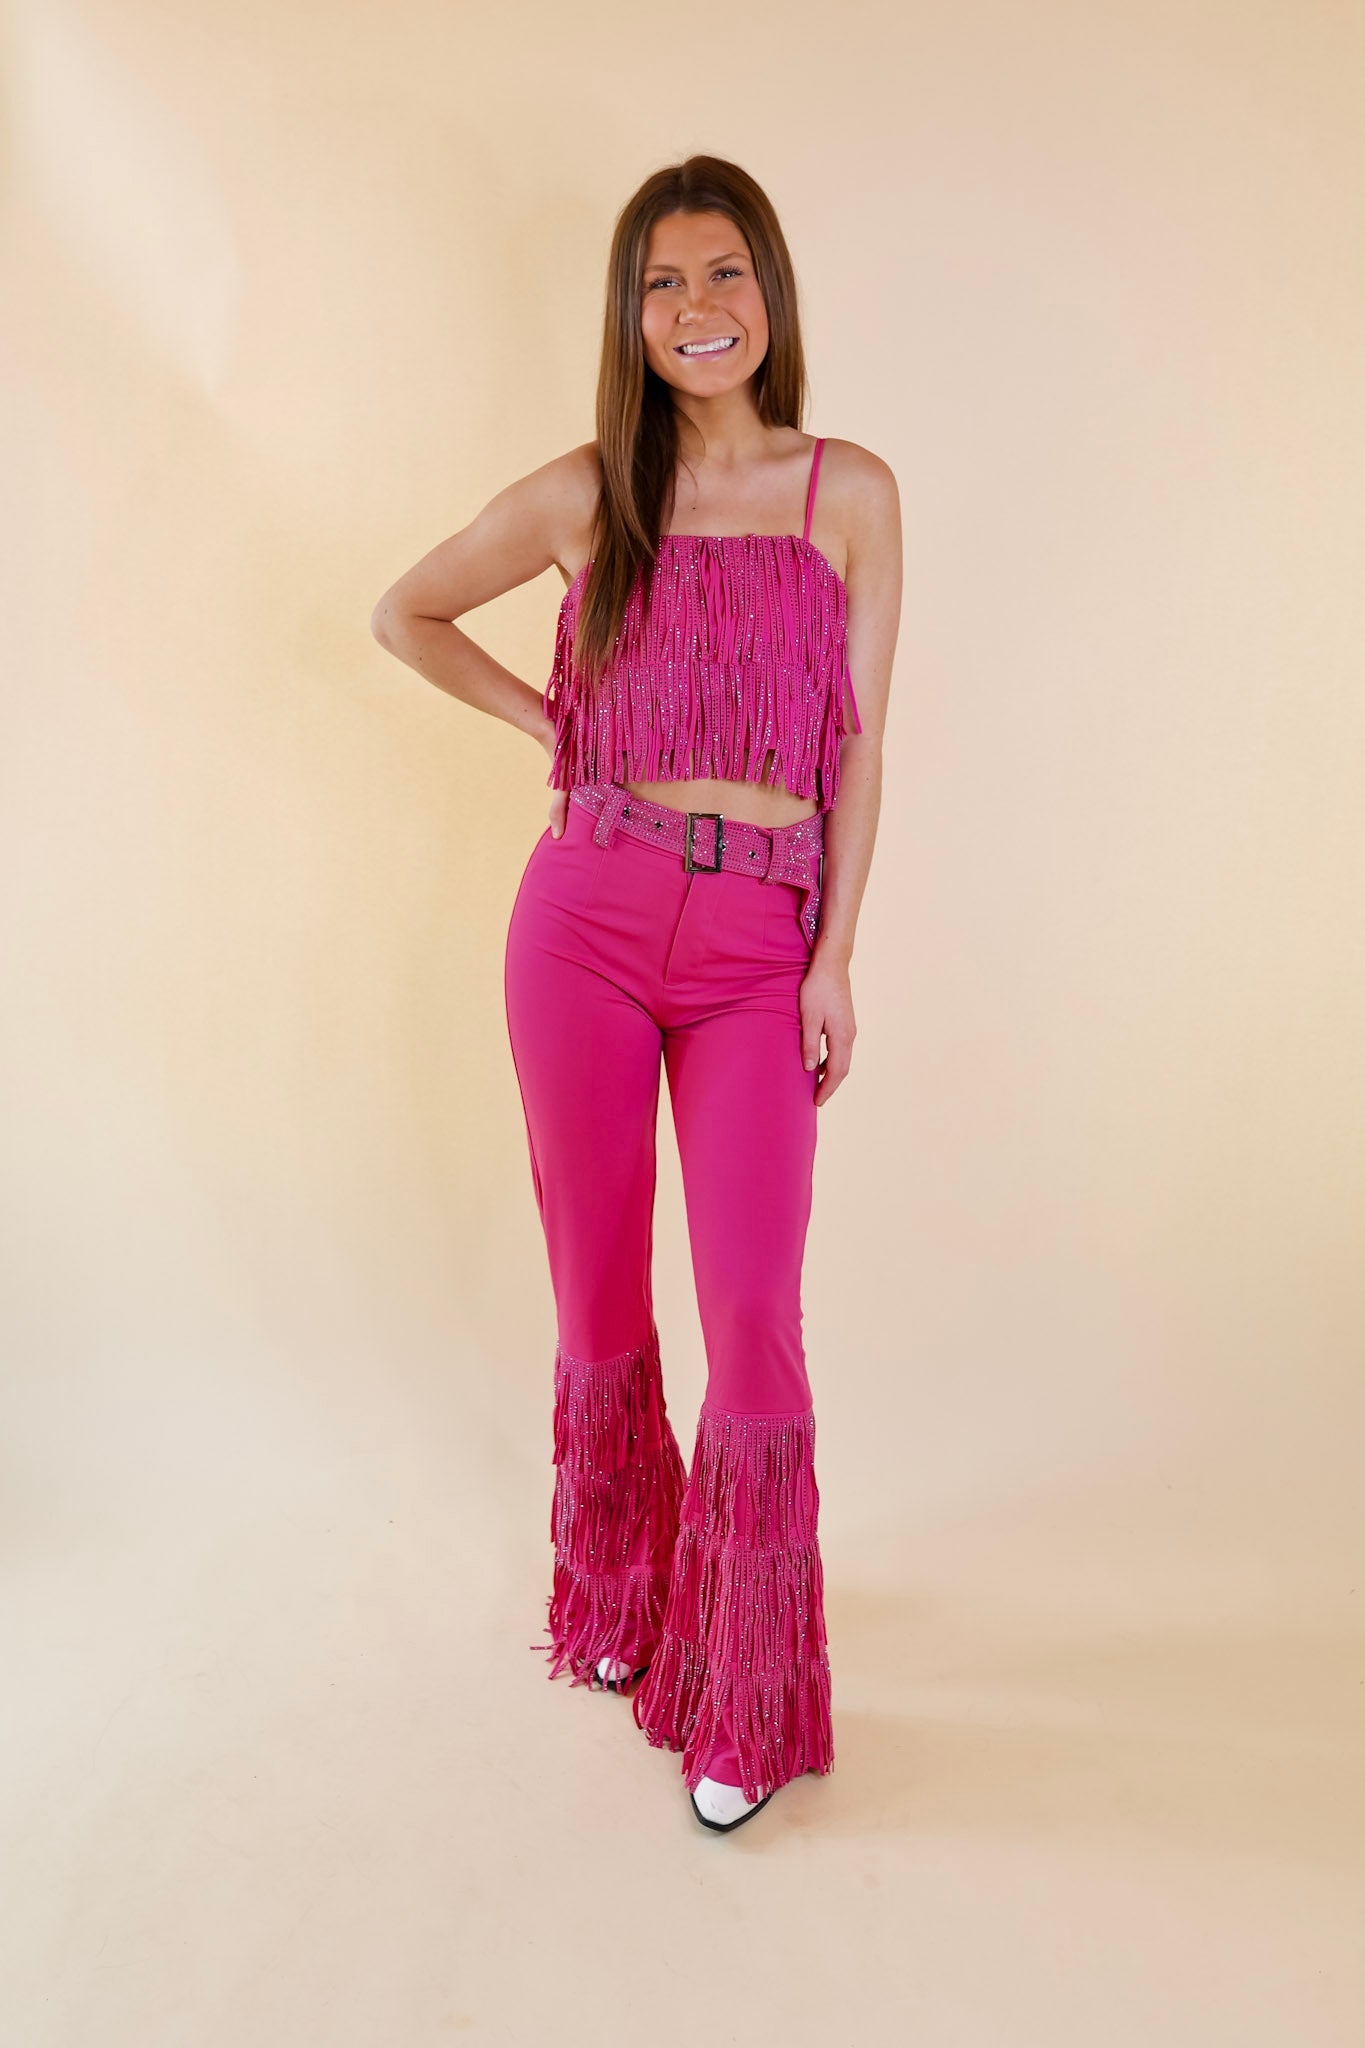 Cowboy Killer Crystal Fringe Crop Top in Pink - Giddy Up Glamour Boutique